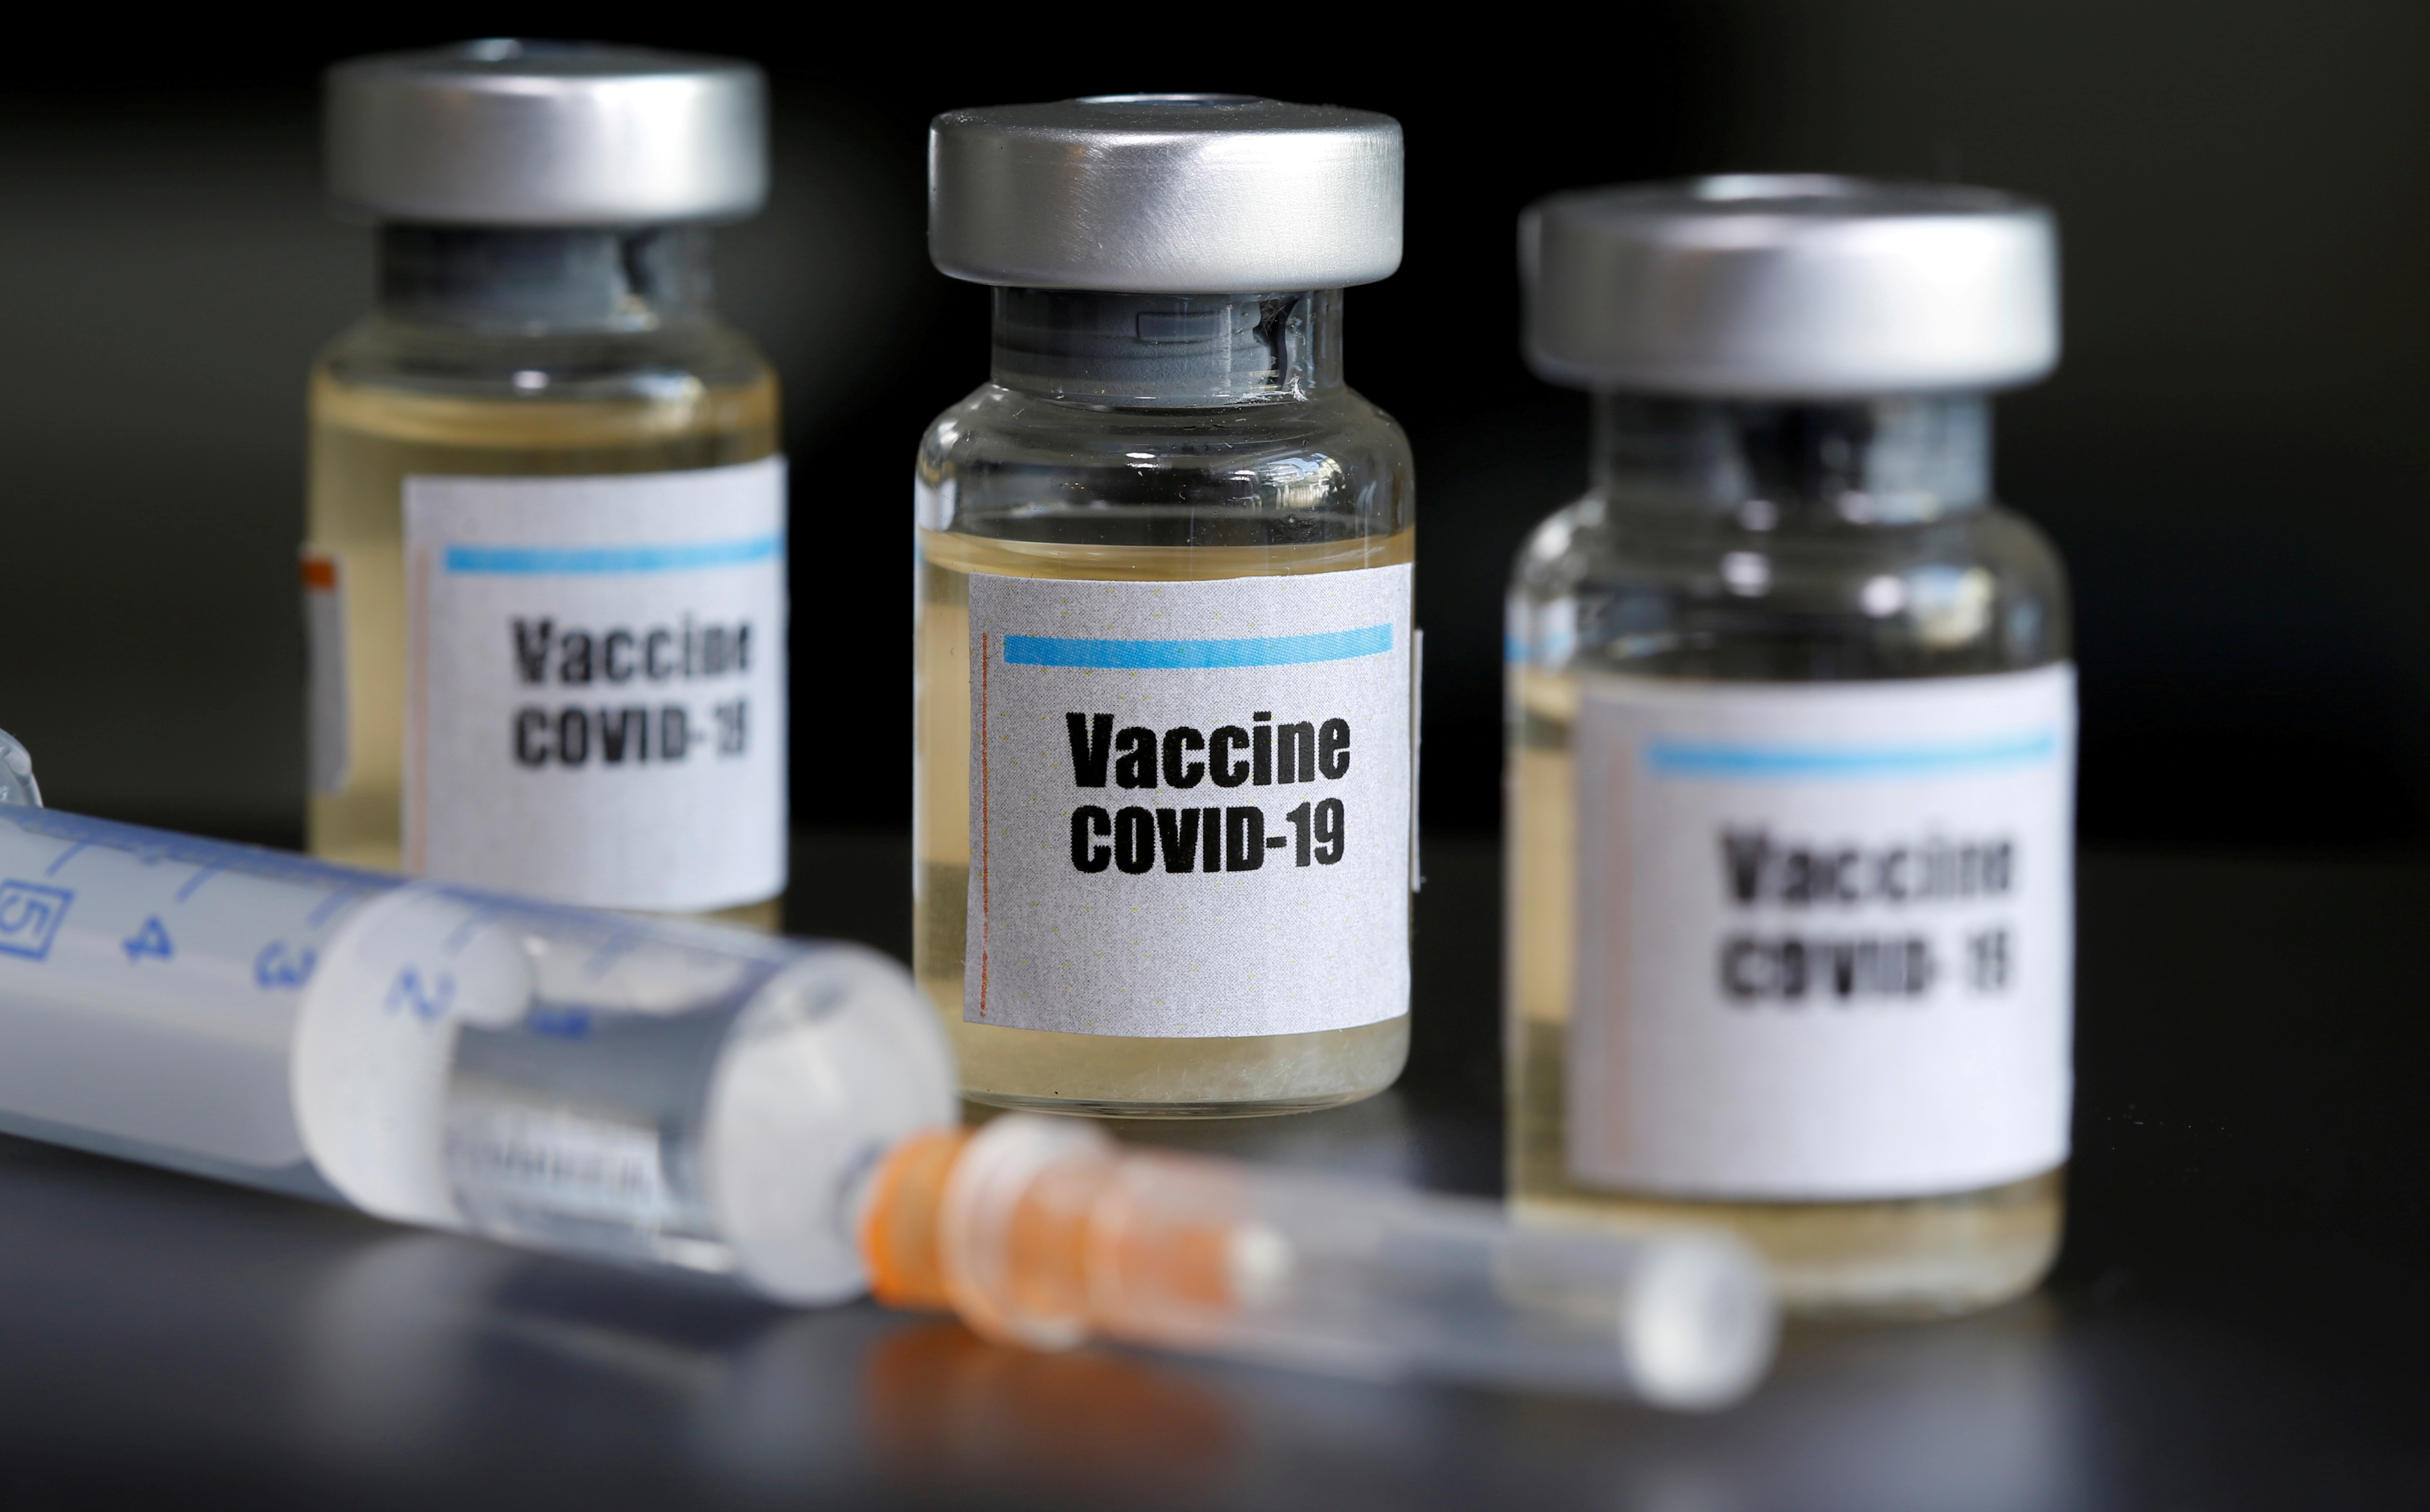 La vacuna contra el COVID-19 estaría disponible el año que viene - REUTERS/Dado Ruvic/File Photo